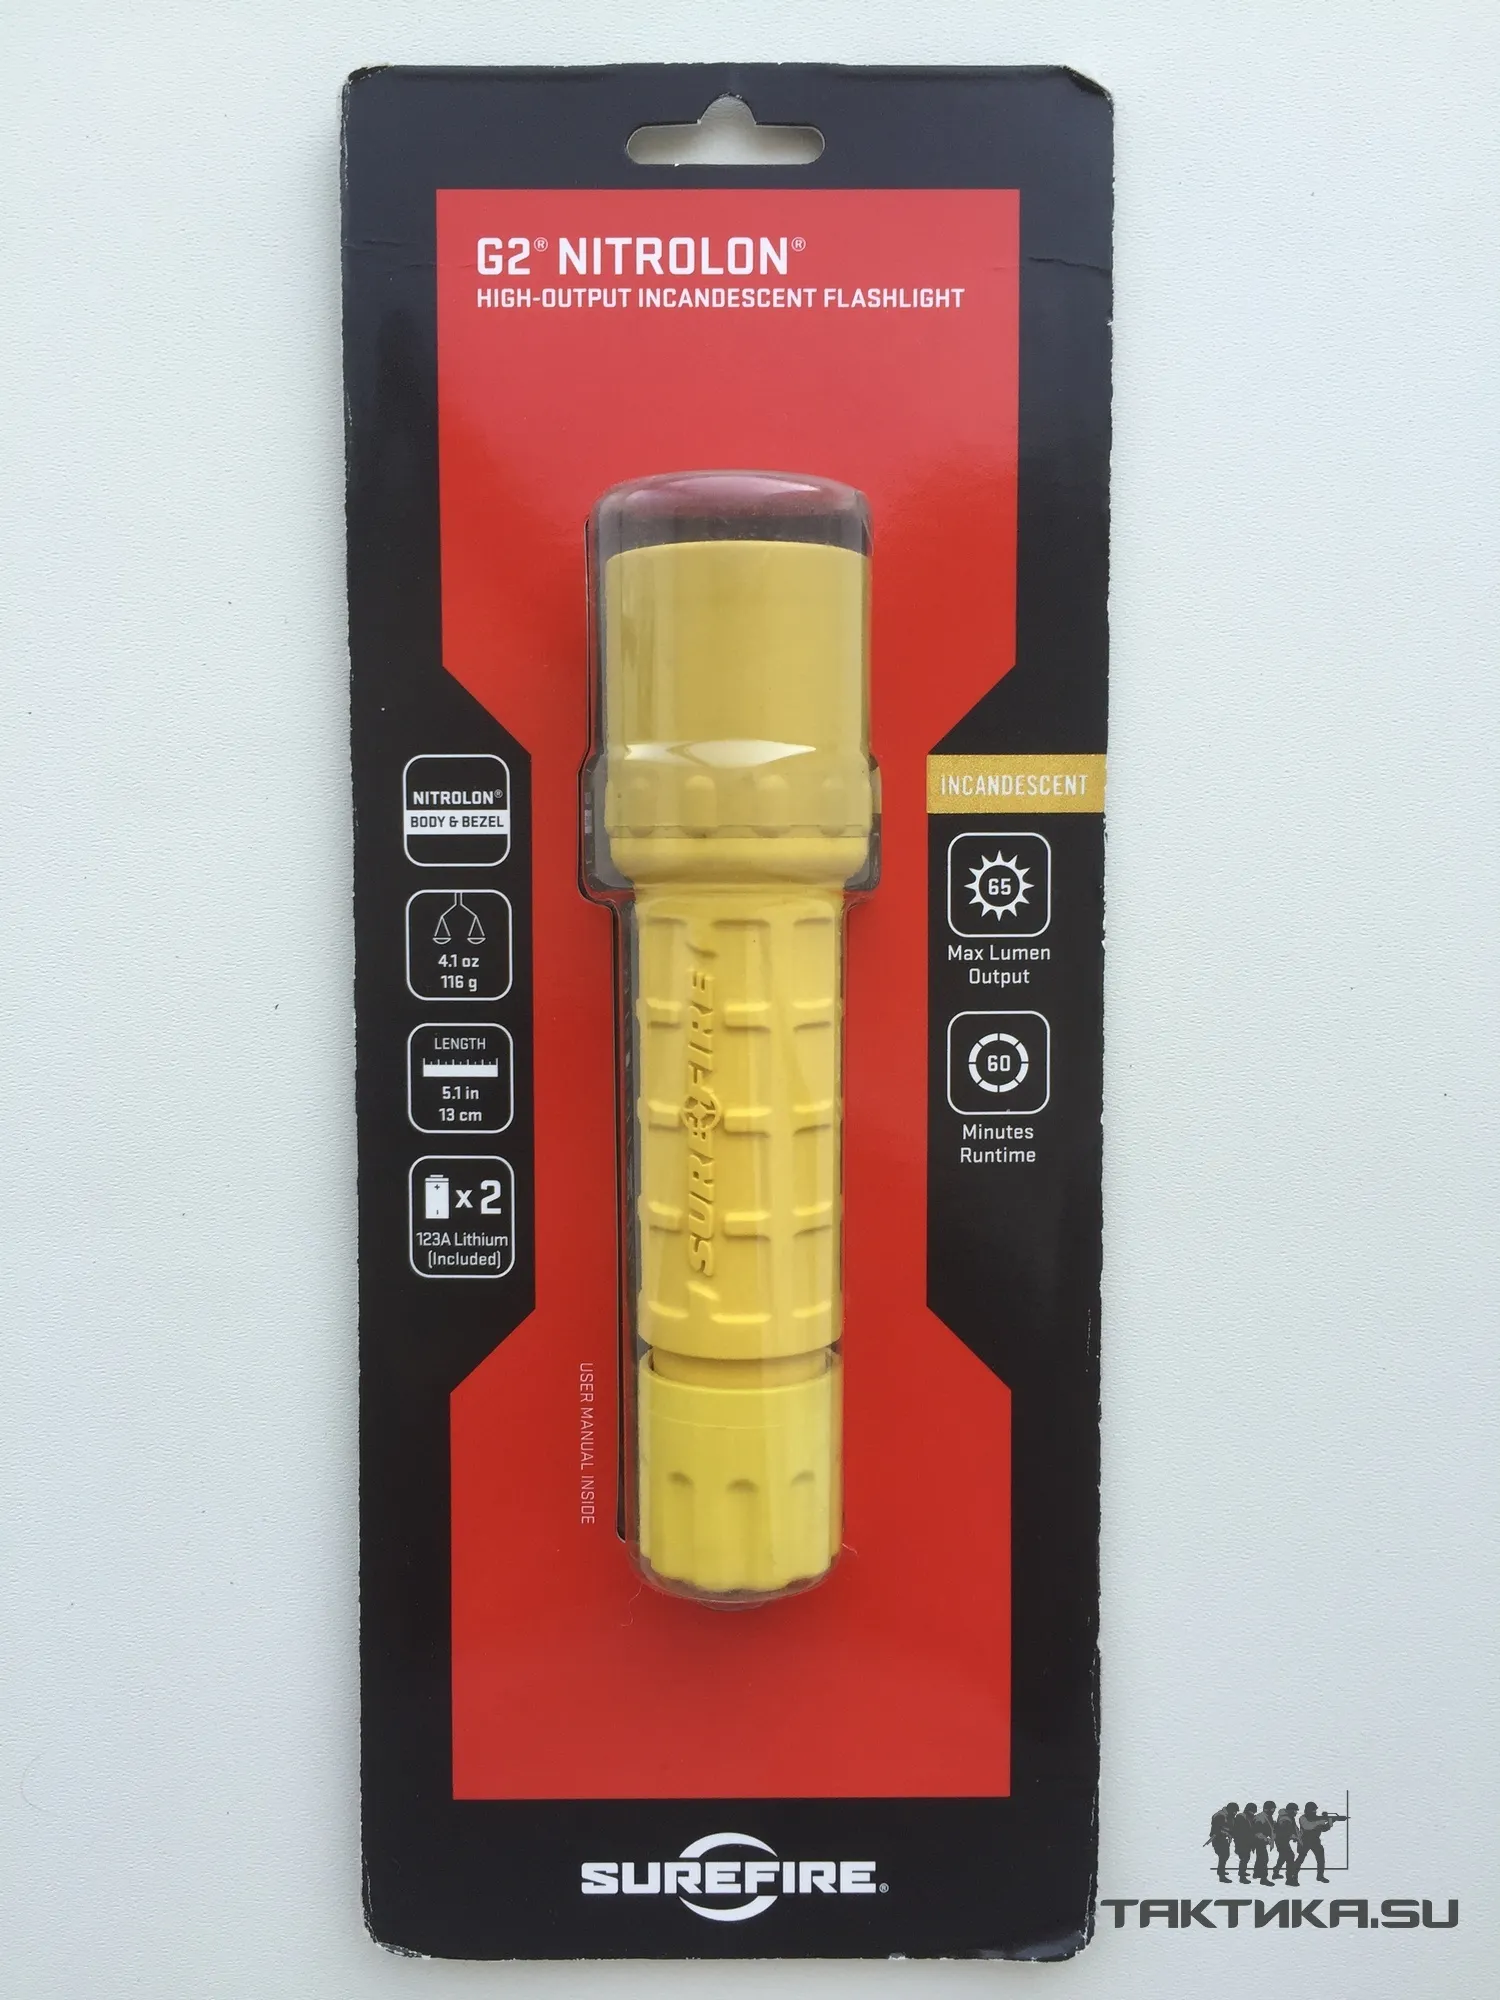 Тактический фонарик SureFire G2 Nitrolon желтый, упаковка(блистер)